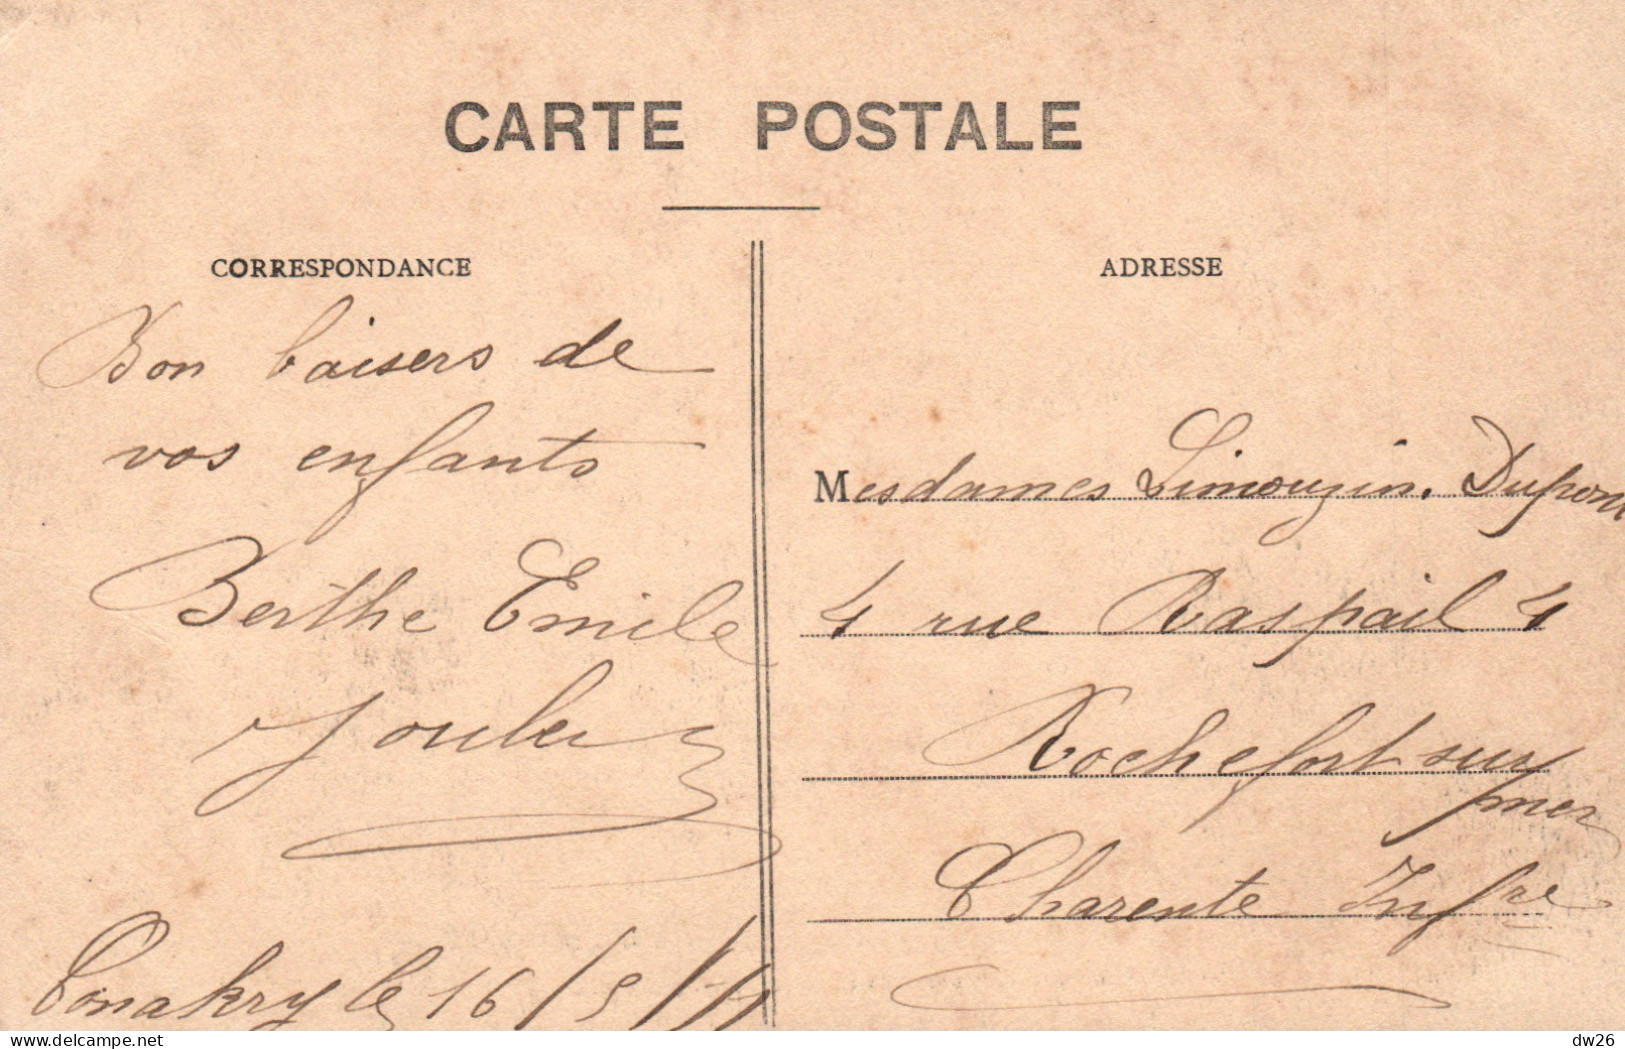 A.O.F. Guinée Française, Conakry: 12e Avenue, Le Chemin De La Gare De Marchandises - Carte P.V. N° 12 - Guinea Francese